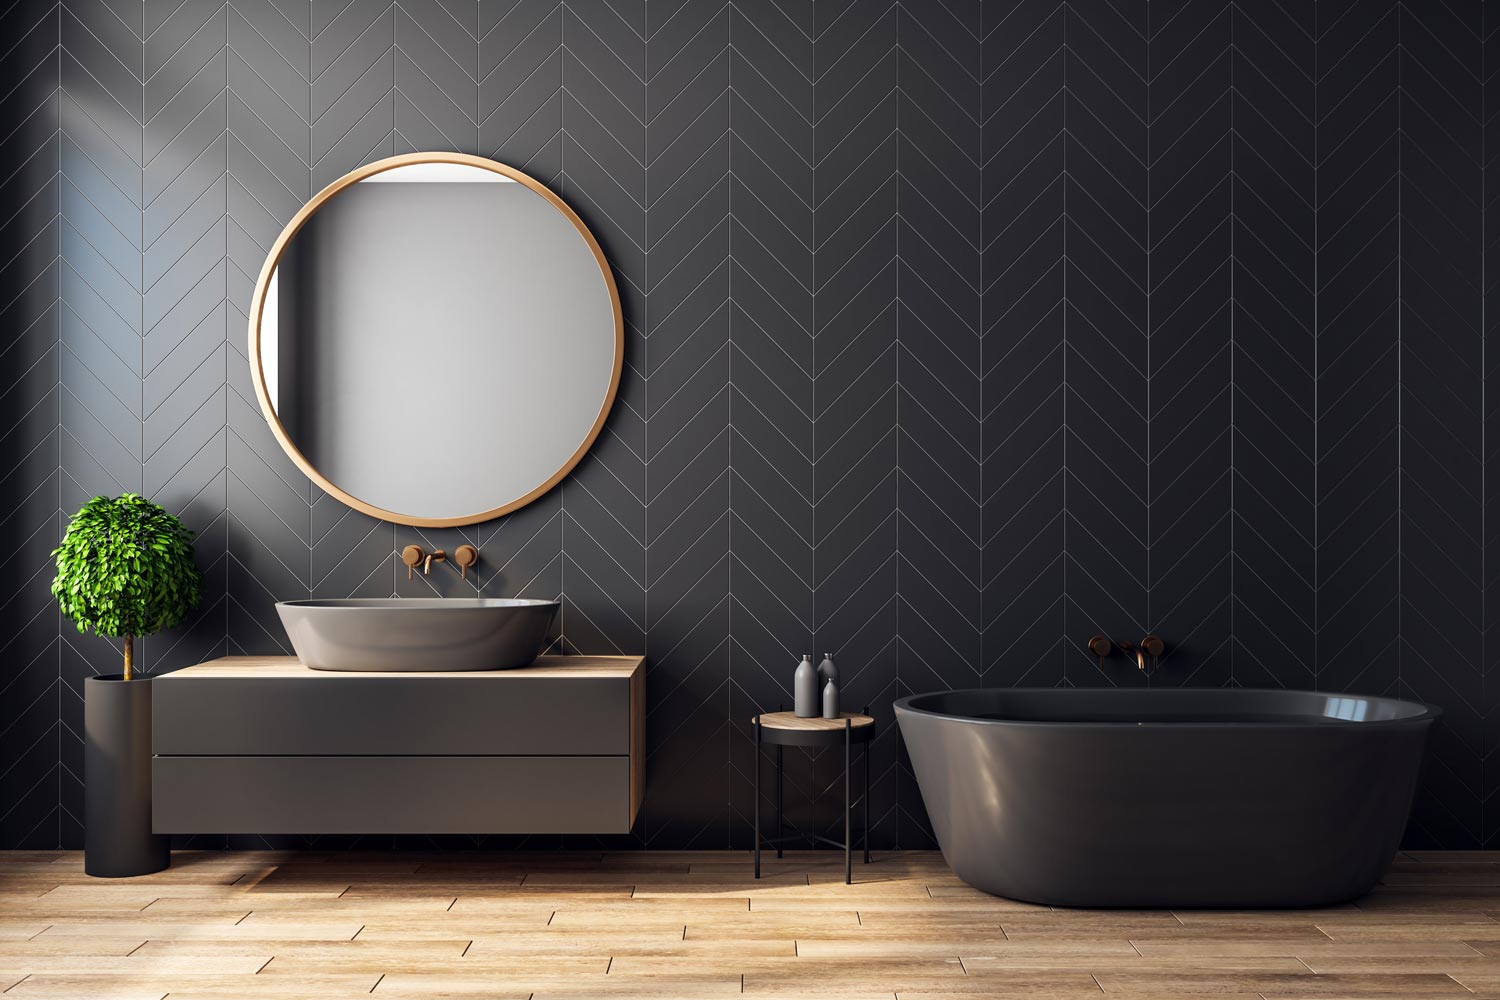 Bathroom Tile Ideas For Small Bathrooms, Commercial Bathroom Wall Tile Ideas